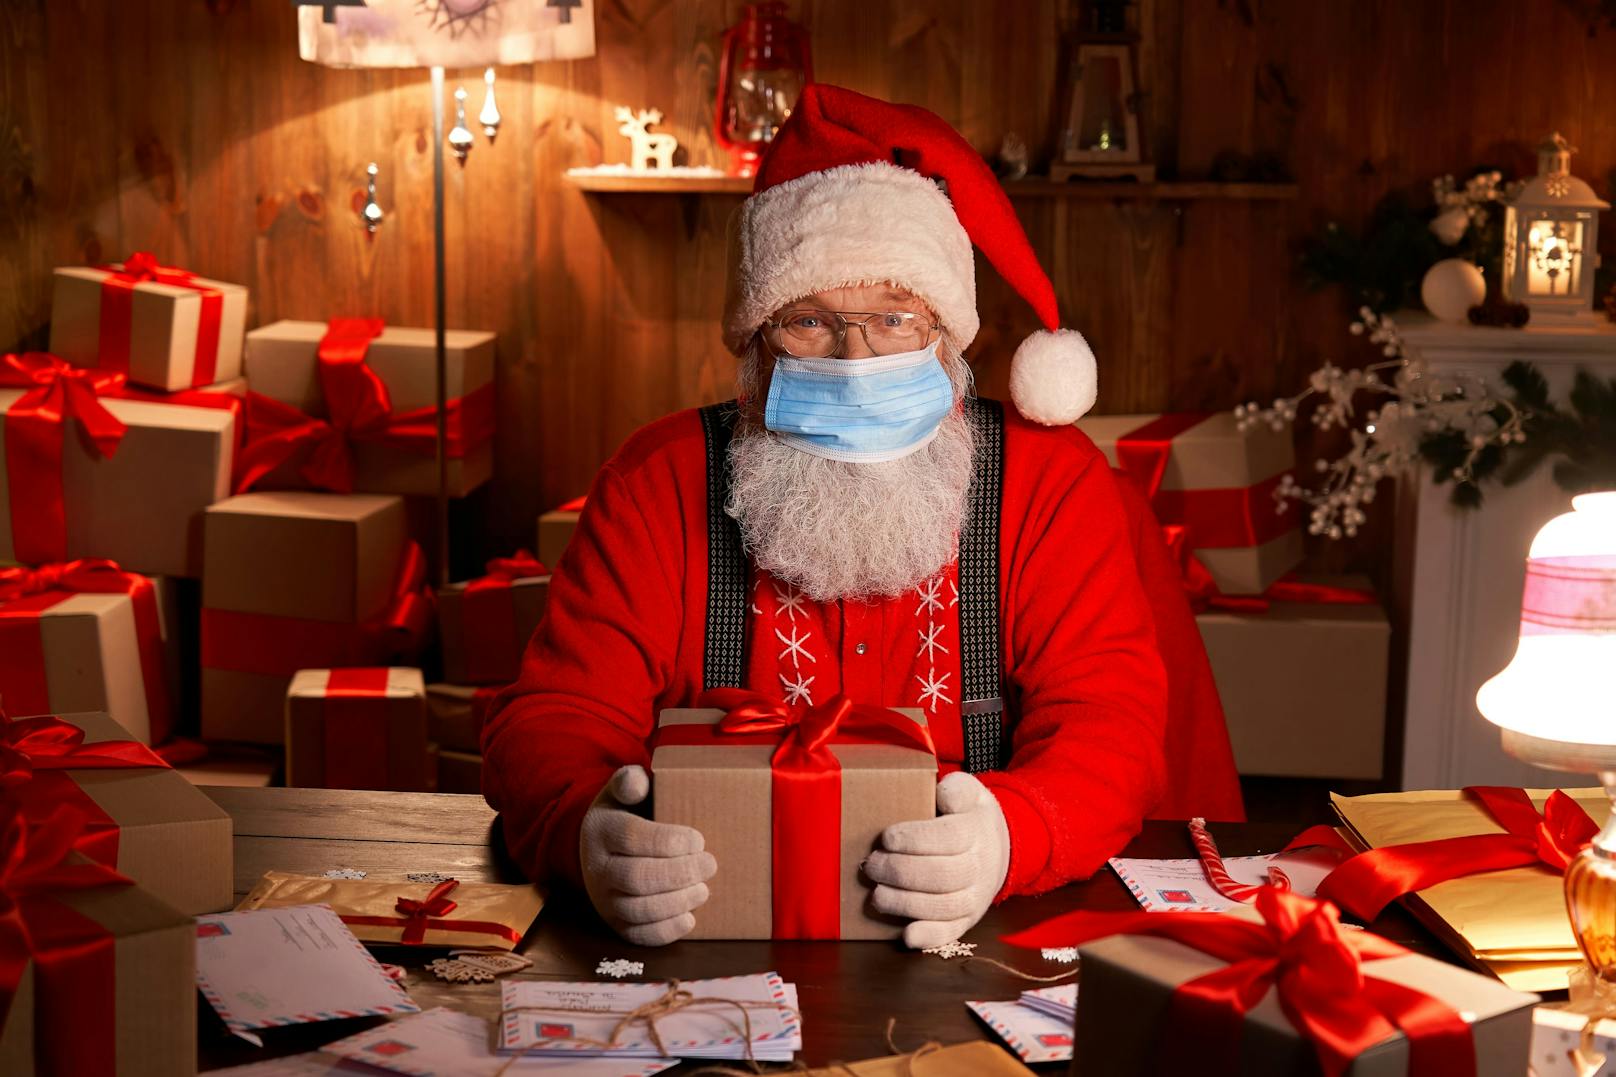 Der Weihnachtsmann kann und darf am 24. Dezember 2020 ungehindert Geschenke verteilen.